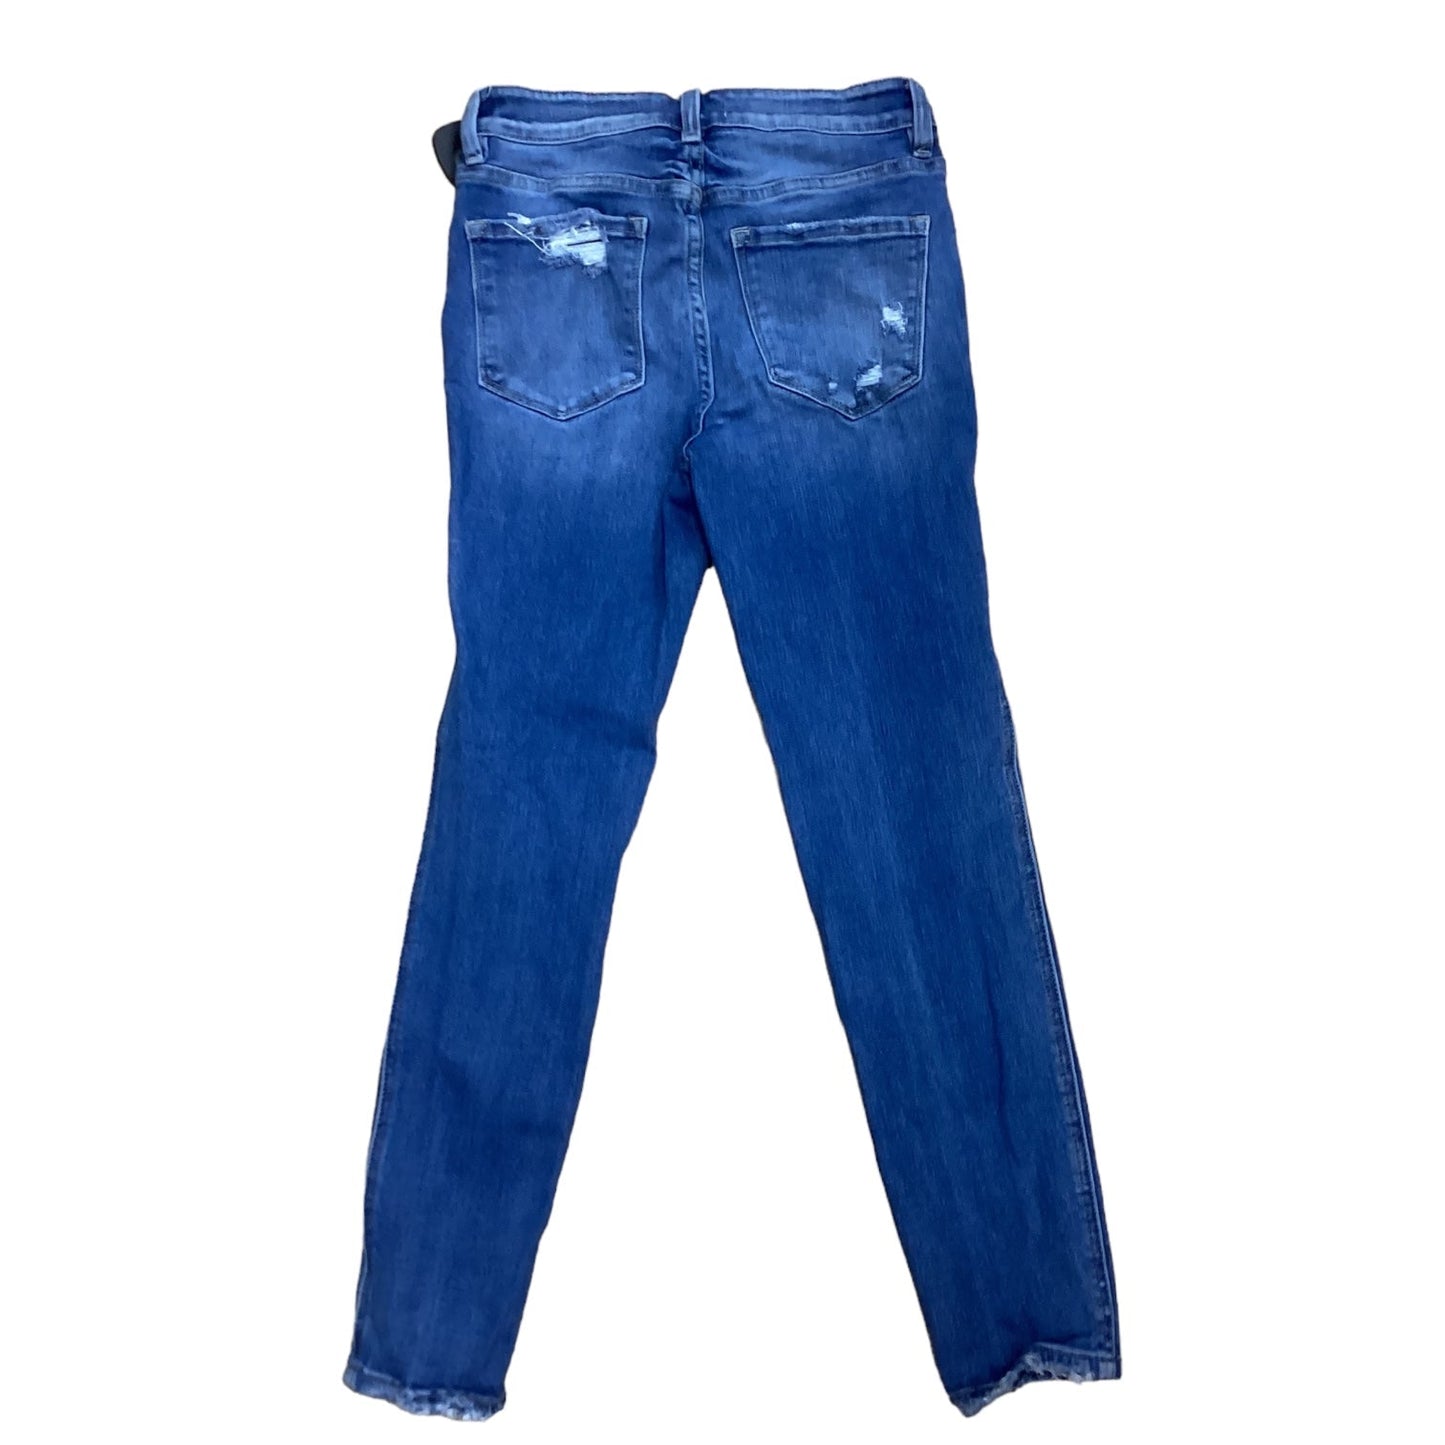 Jeans Designer By Vervet  Size: 4